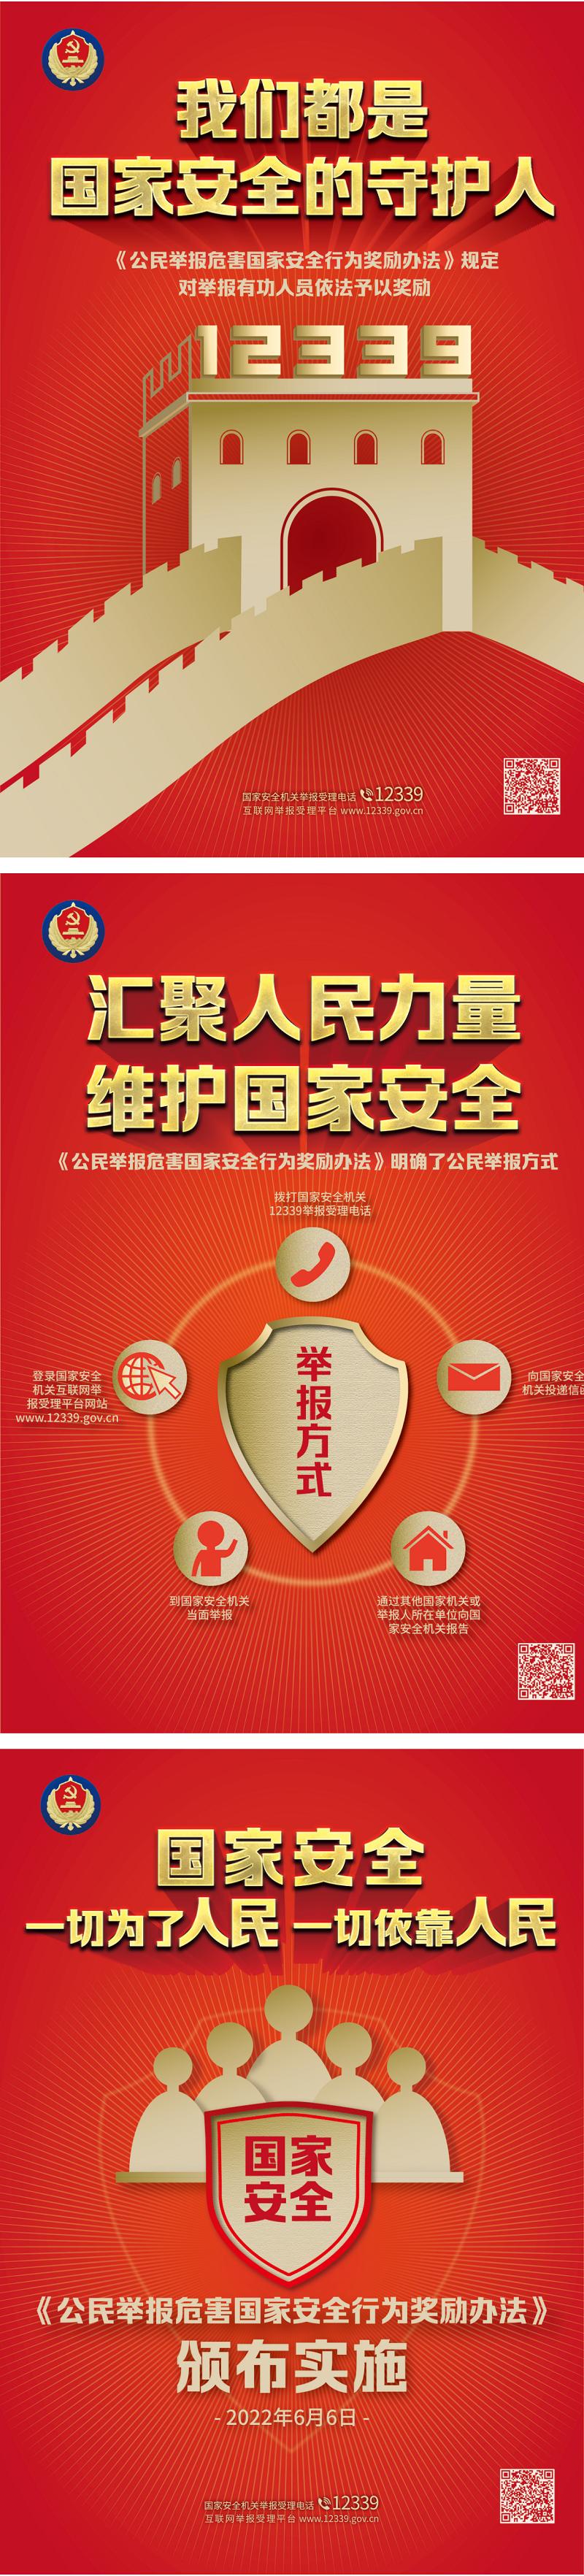 《中华人民共和国反间谍法》颁布实施八周年宣传海报